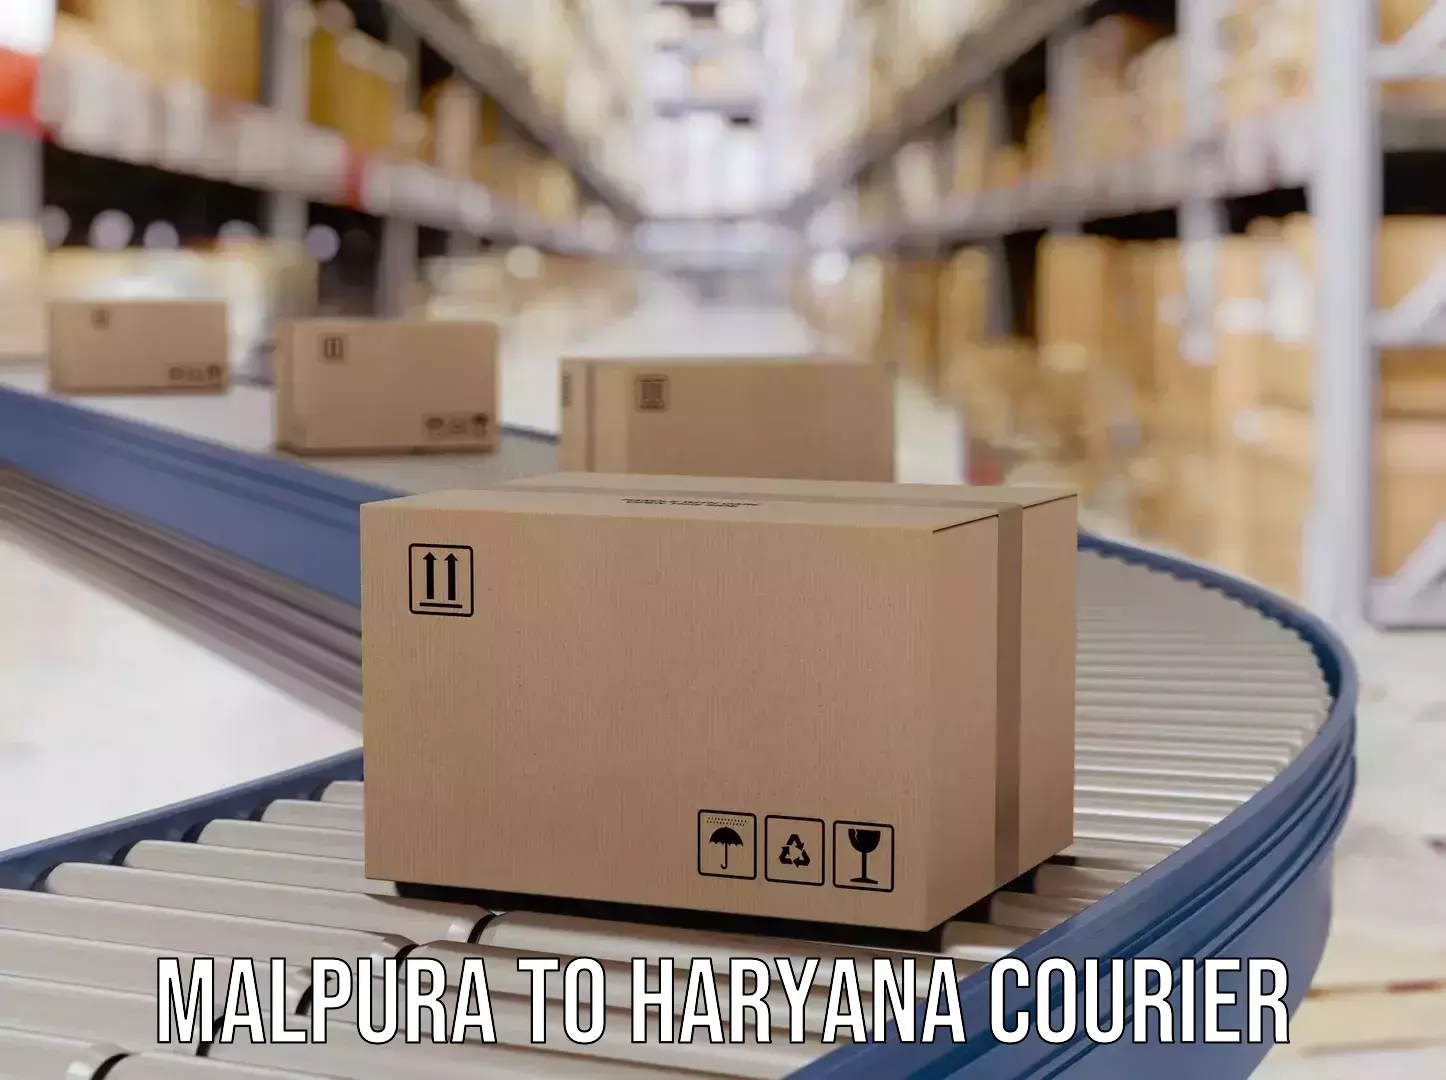 Urgent courier needs Malpura to Haryana